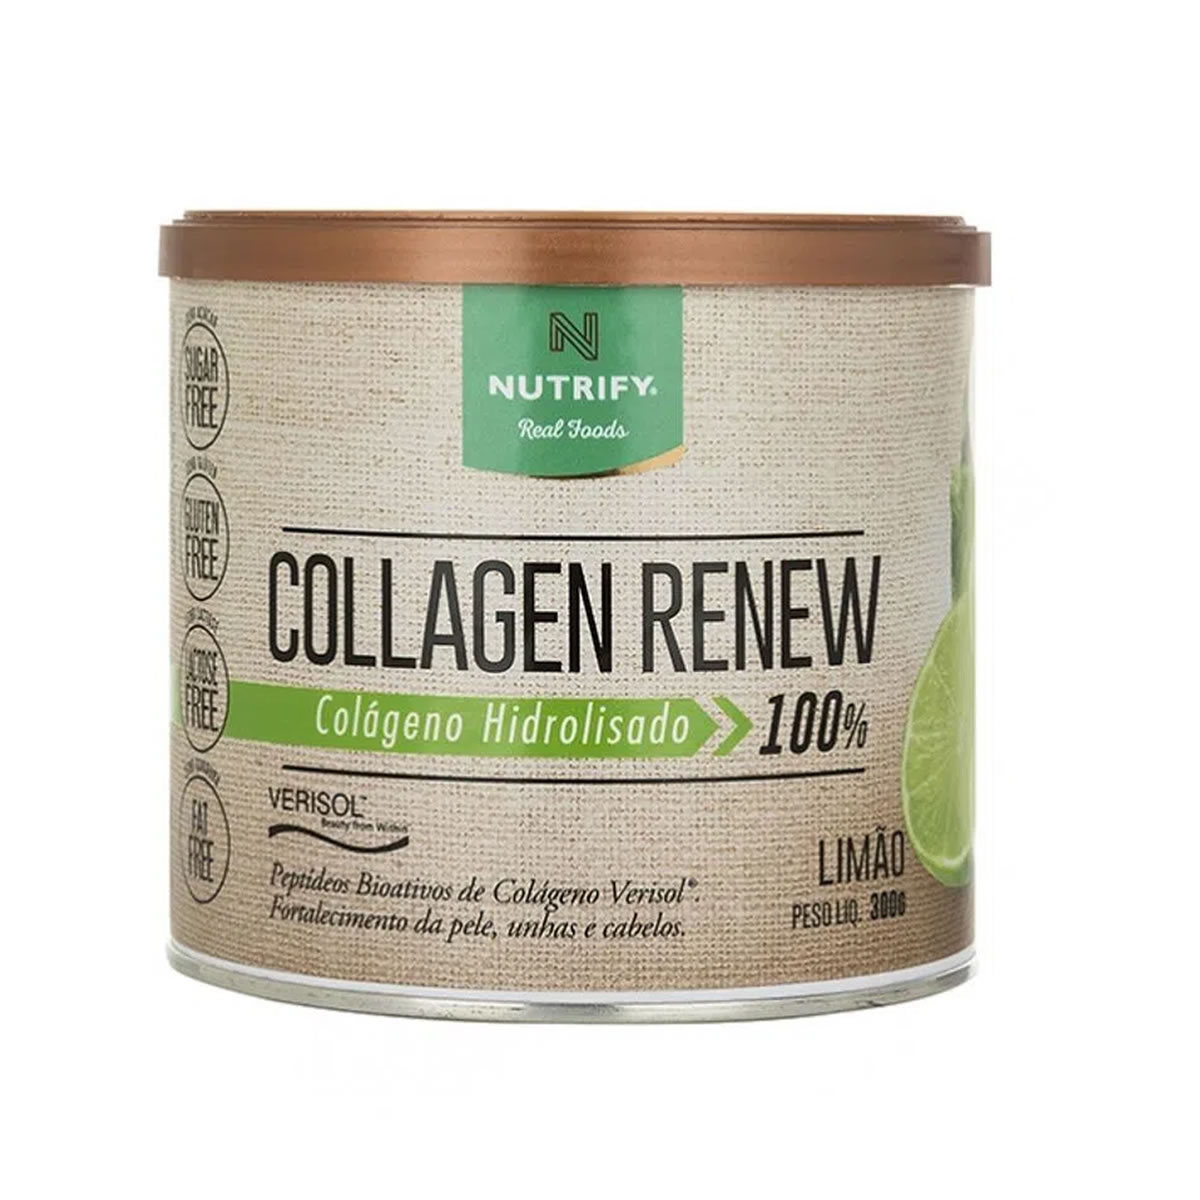 Colágeno Collagen Renew sabor Limão 300g - Nutrify